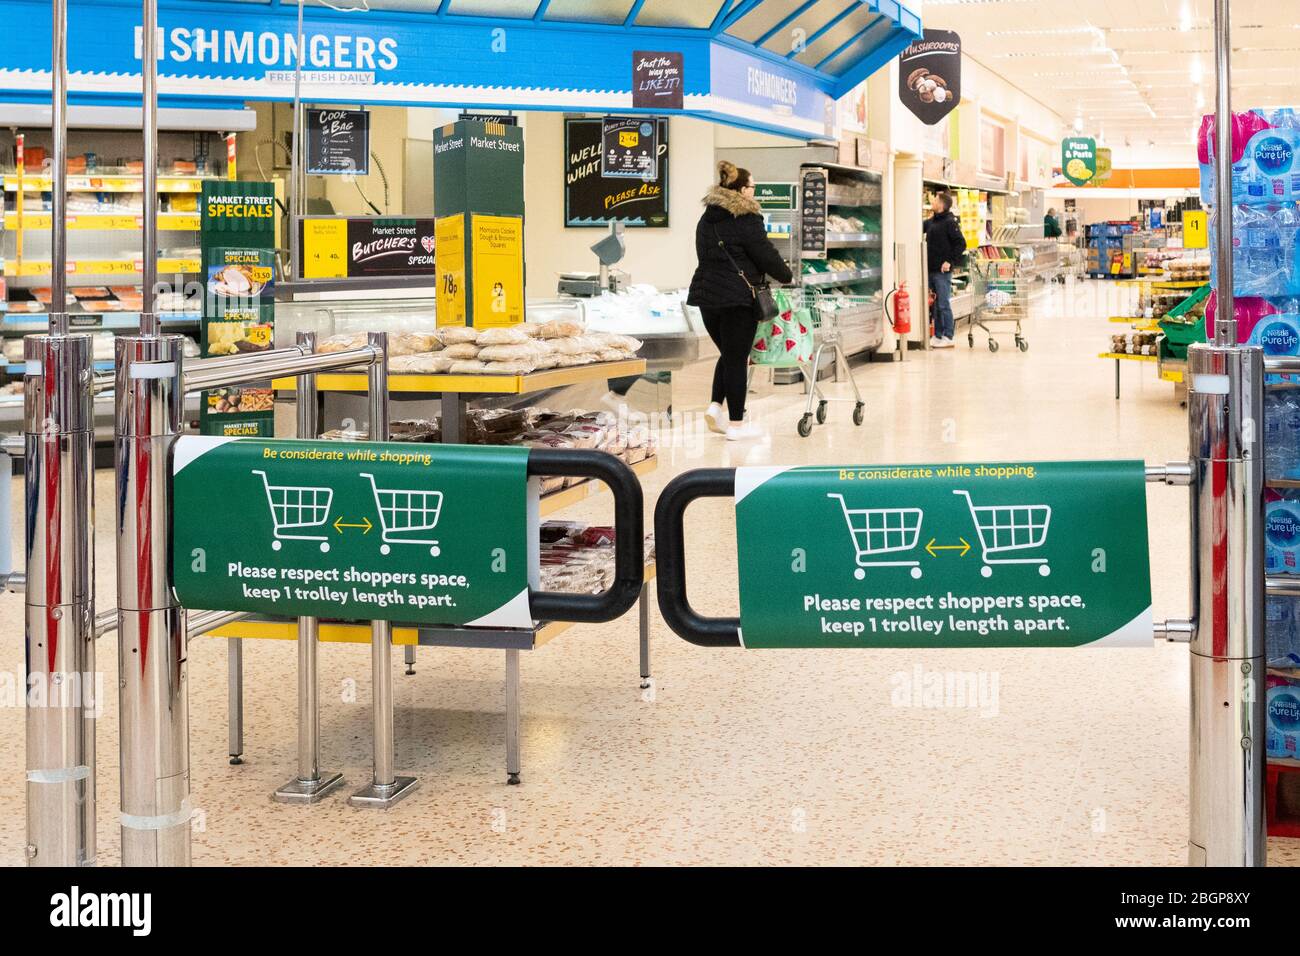 Soziale Distanz im Supermarkt Morrisons, Großbritannien während der Coronavirus-Pandemie 2020 - Halten Sie 1 Trolley Länge auseinander und begrenzte Kunden innen erlaubt Stockfoto